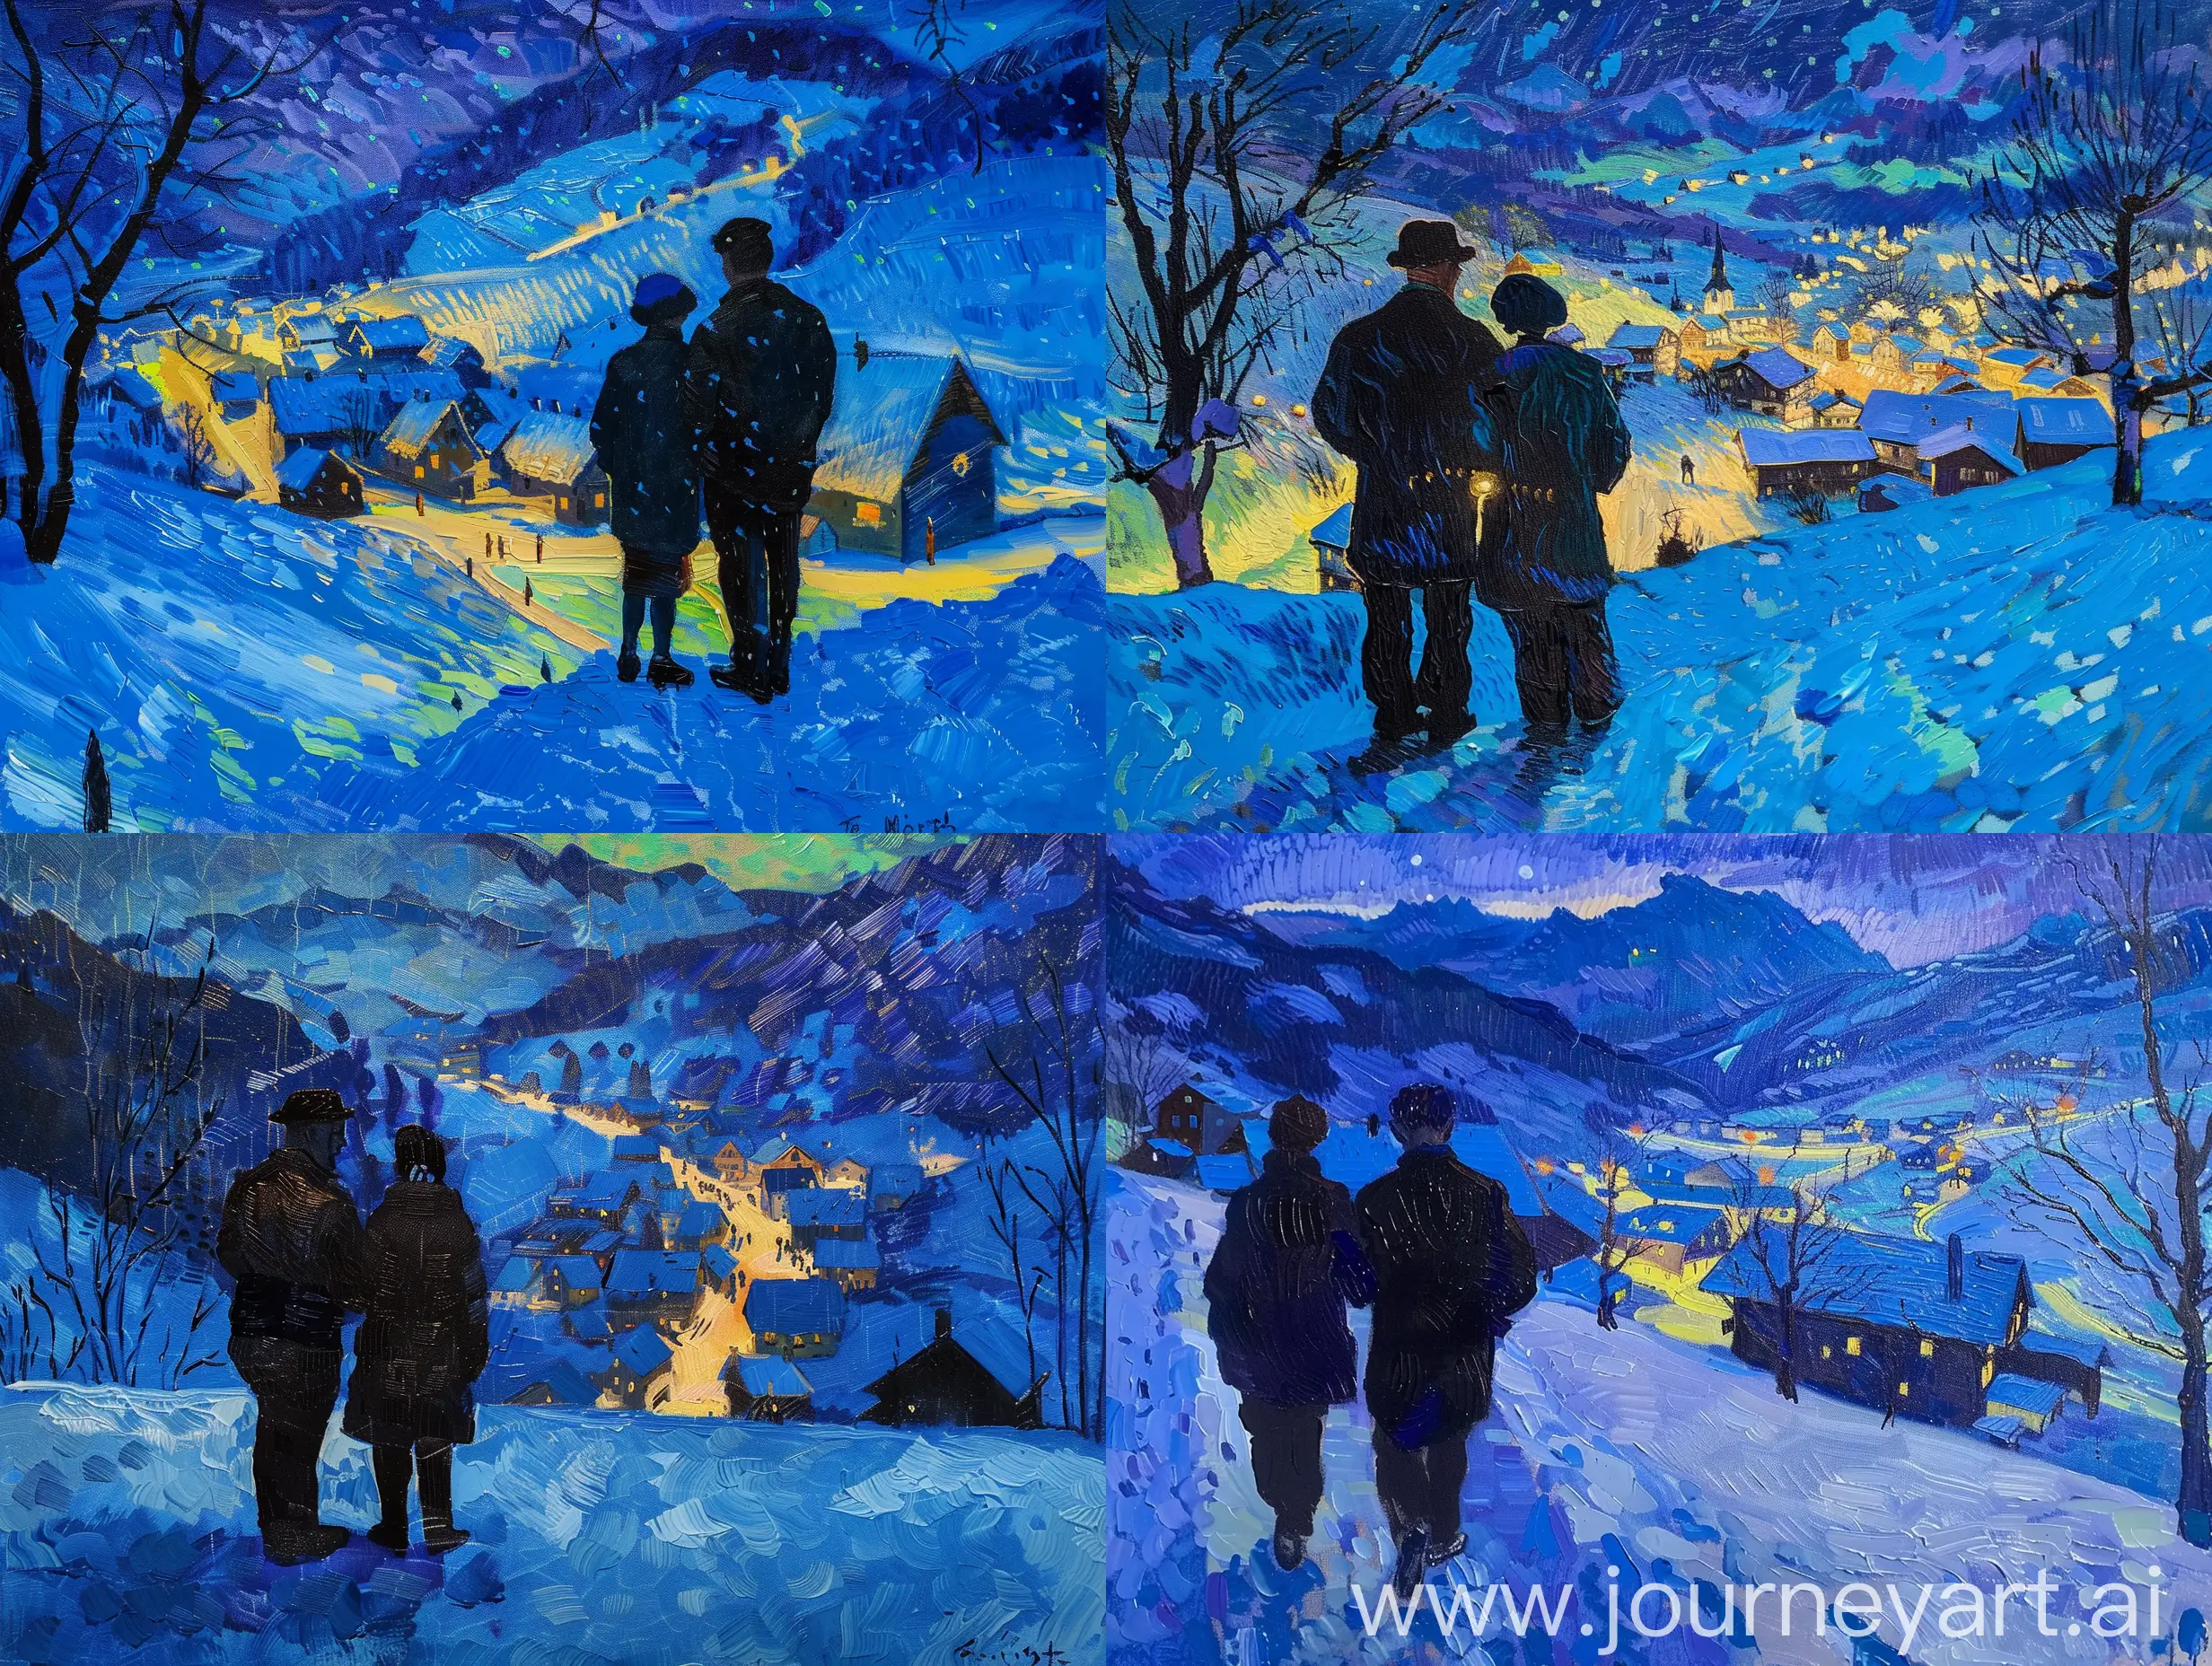 Snowy-Village-Night-Scene-Van-Gogh-Style-Oil-Painting